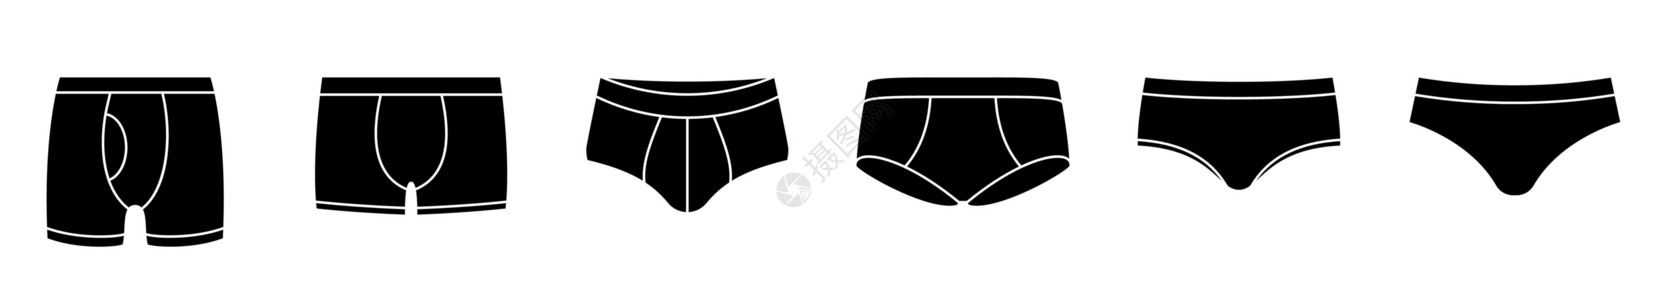 黑色比基尼内裤图标 一套男人的内衣图标 矢量插图插画